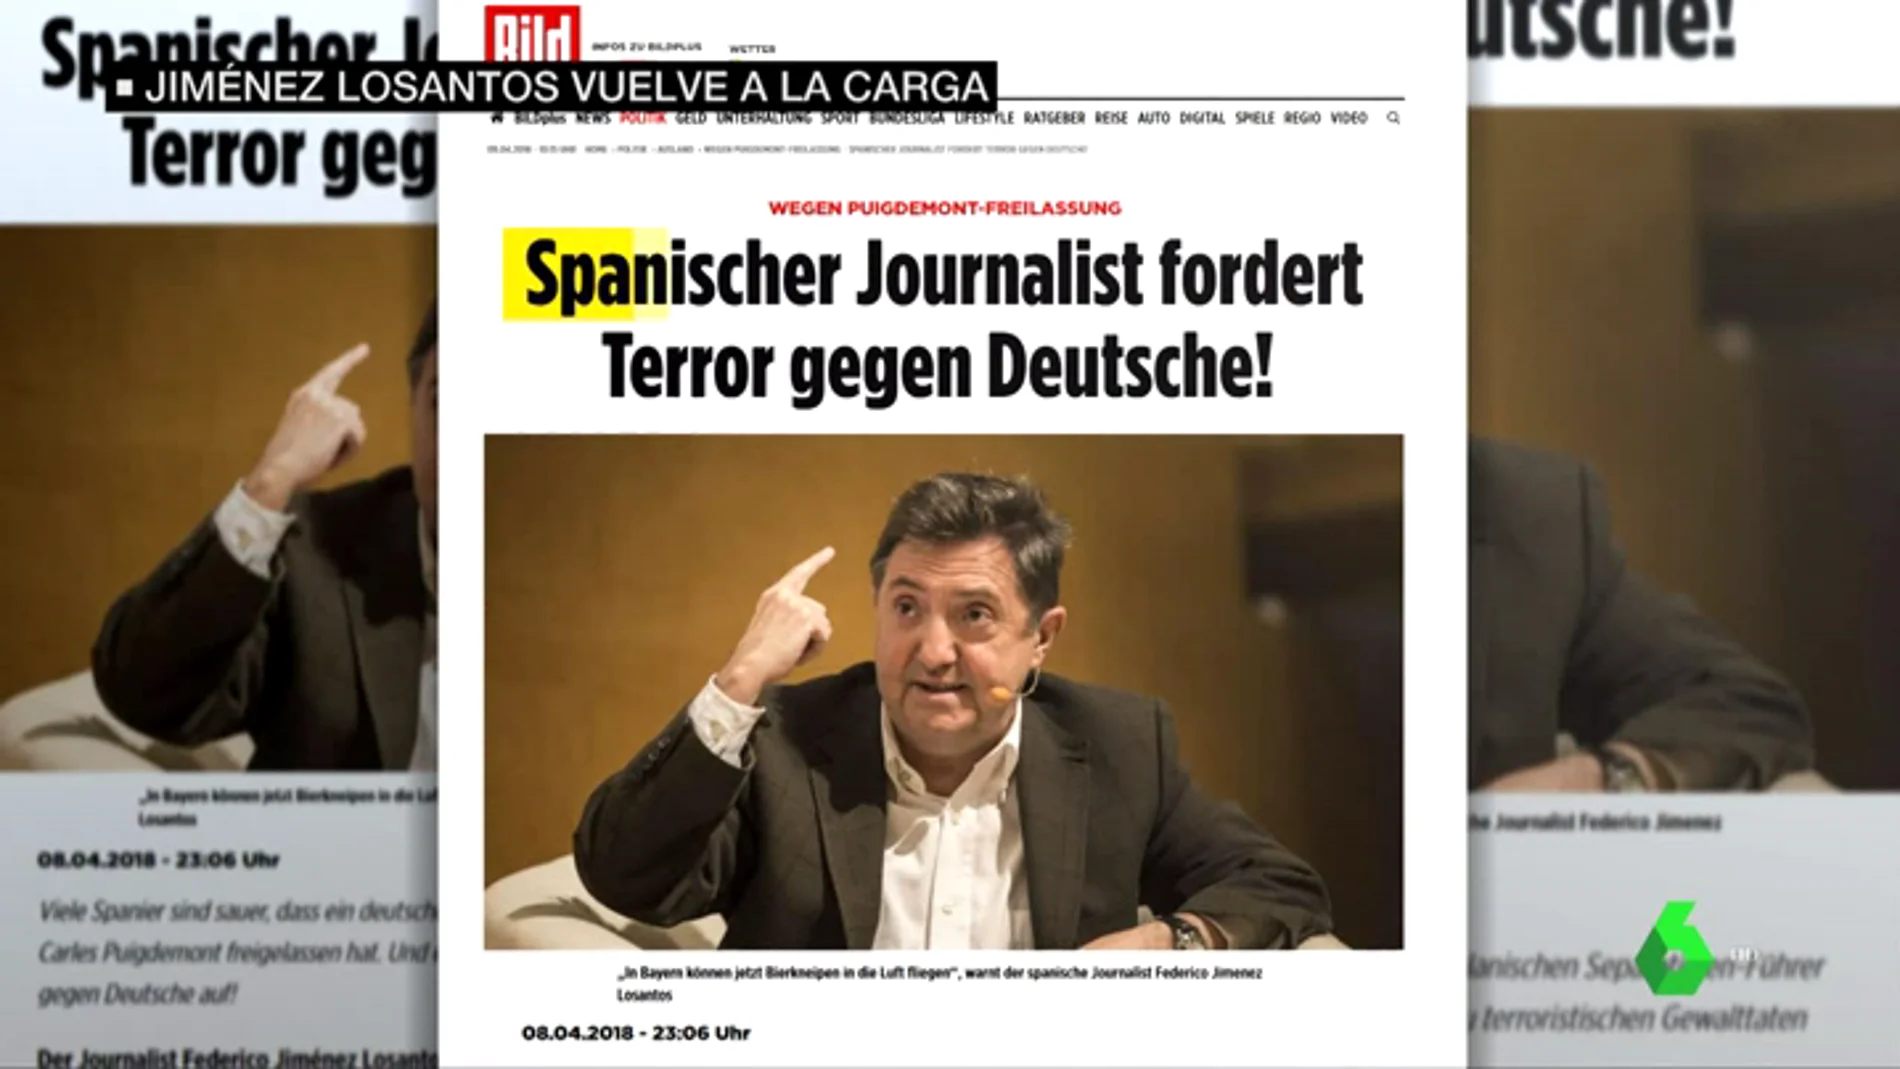 El sensacionalista 'Bild' pone el foco sobre Jiménez Losantos